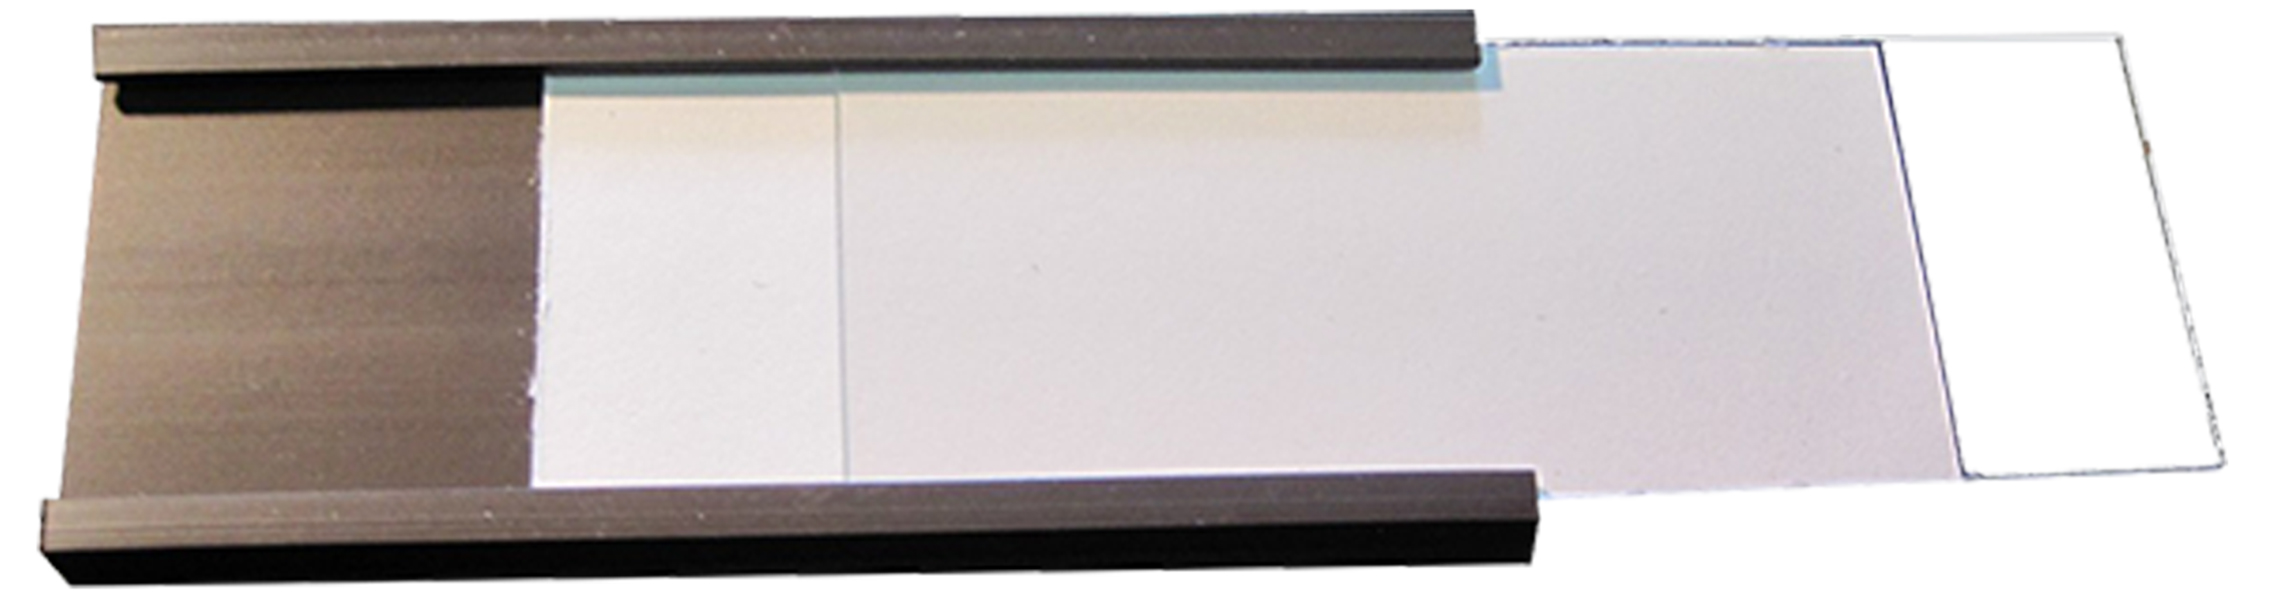 Etiquetas magnéticas rotulables para estanterías